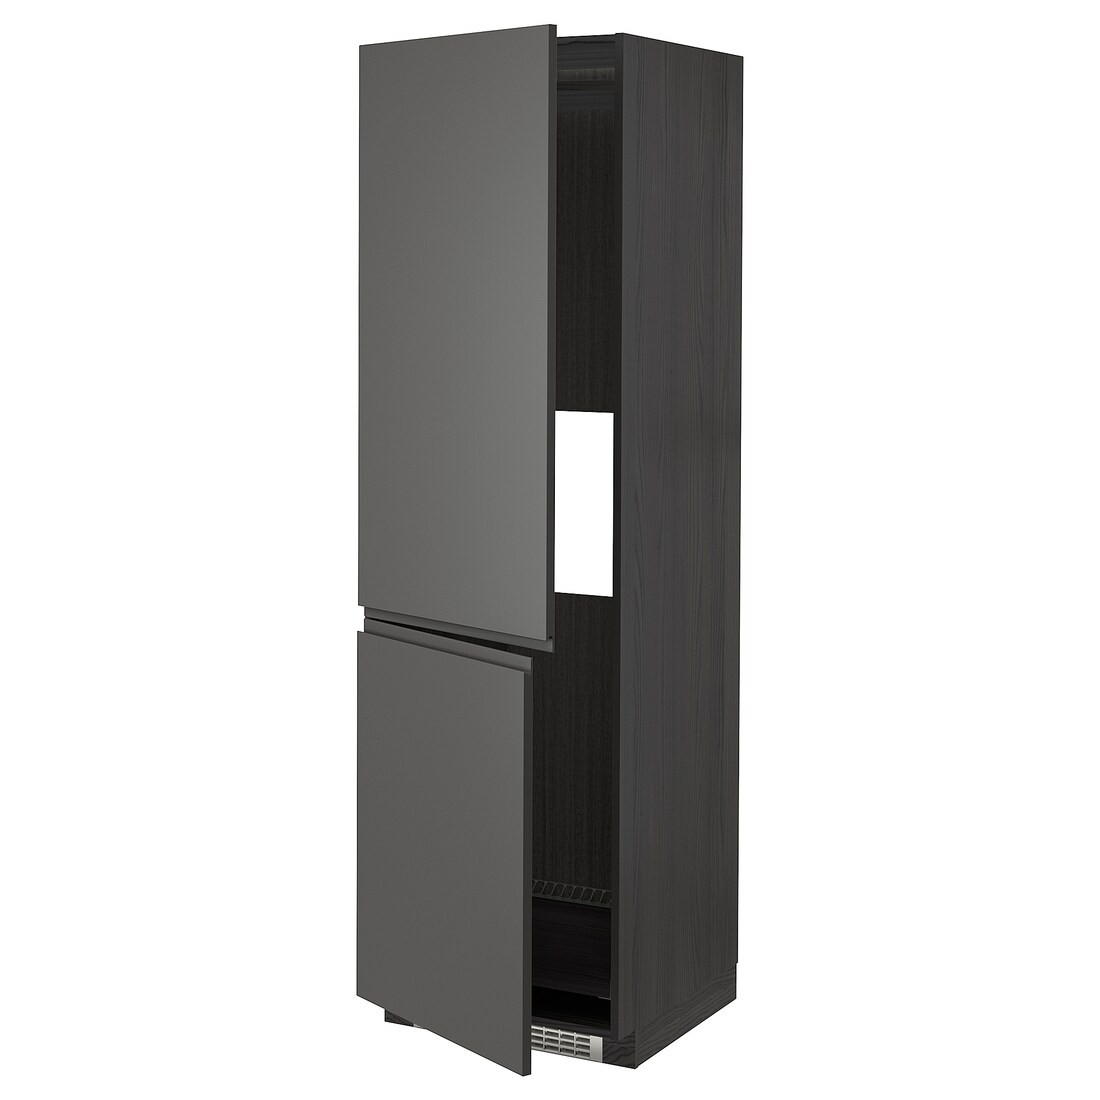 METOD МЕТОД Высокий шкаф для холодильника / морозильника, черный / Voxtorp темно-серый, 60x60x200 см